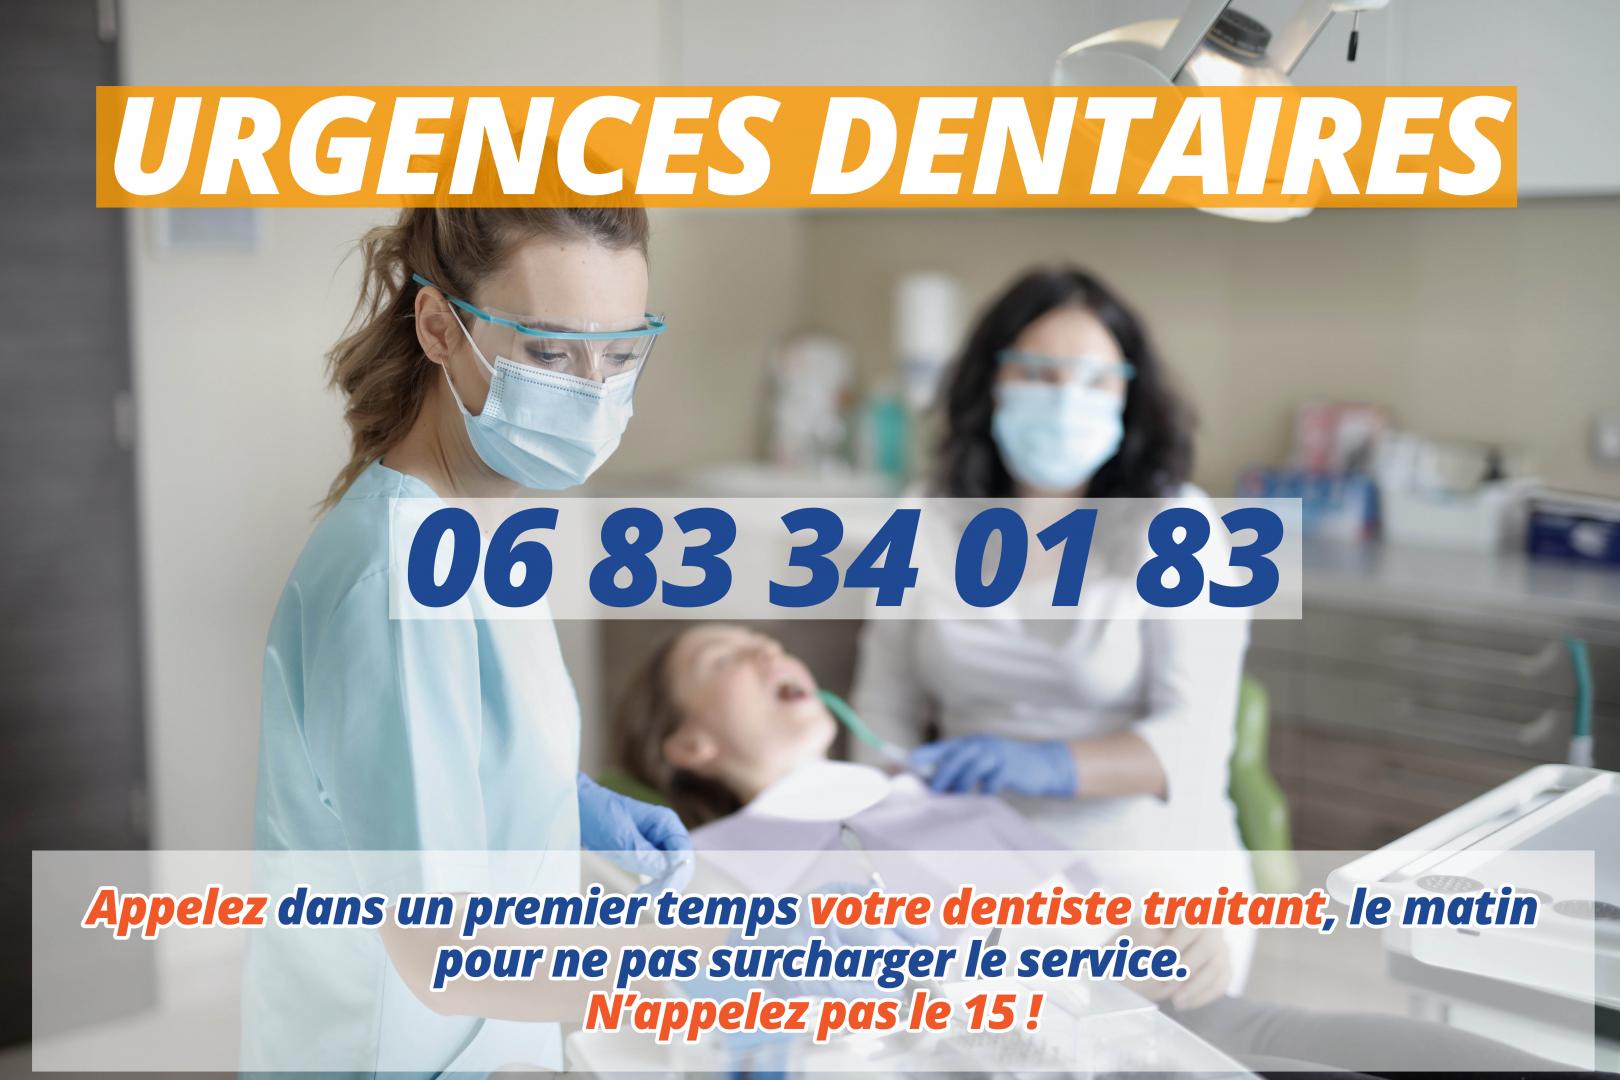 En cas d'urgence dentaire, un seul numéro : 06 83 34 01 83.